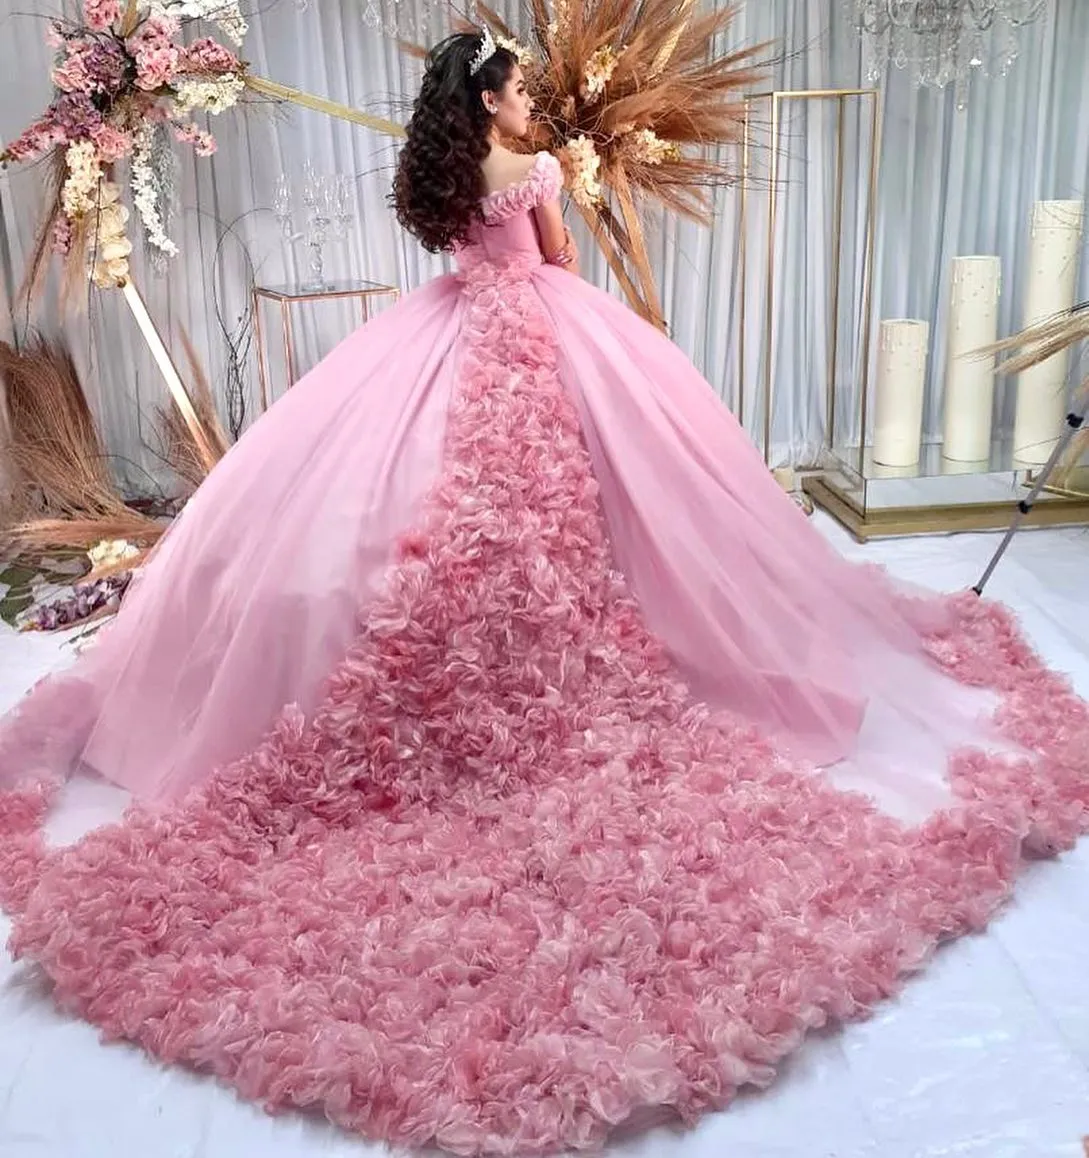 クマリックXV Vestidos de 15AñosピンクのQuinceaneraドレス花のアップリケボリュームガールズxvブリチーデーウェア